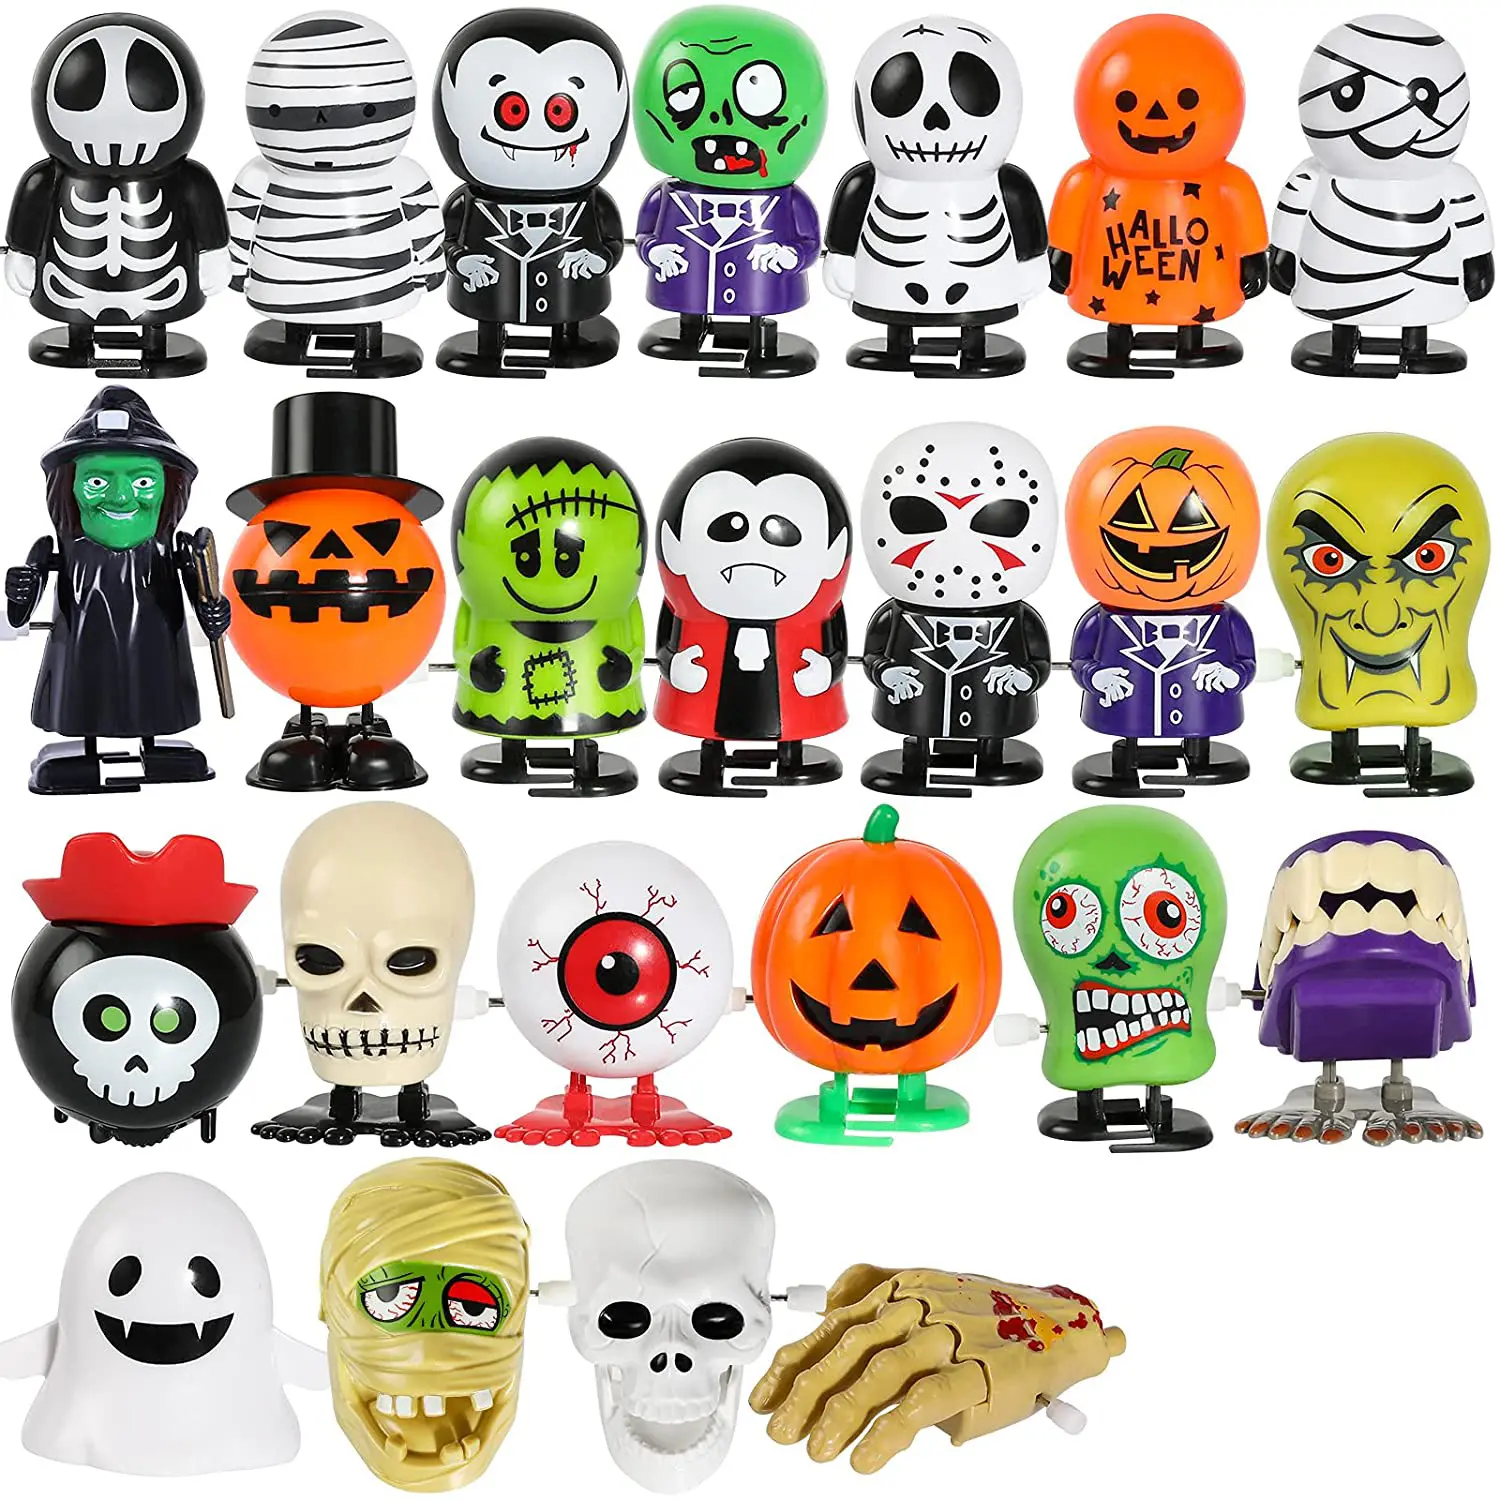 Mini jouets en plastique pour enfants, différents modèles, halloween, jouet à remonter, fantôme, pirate, crâne, nouvelle collection